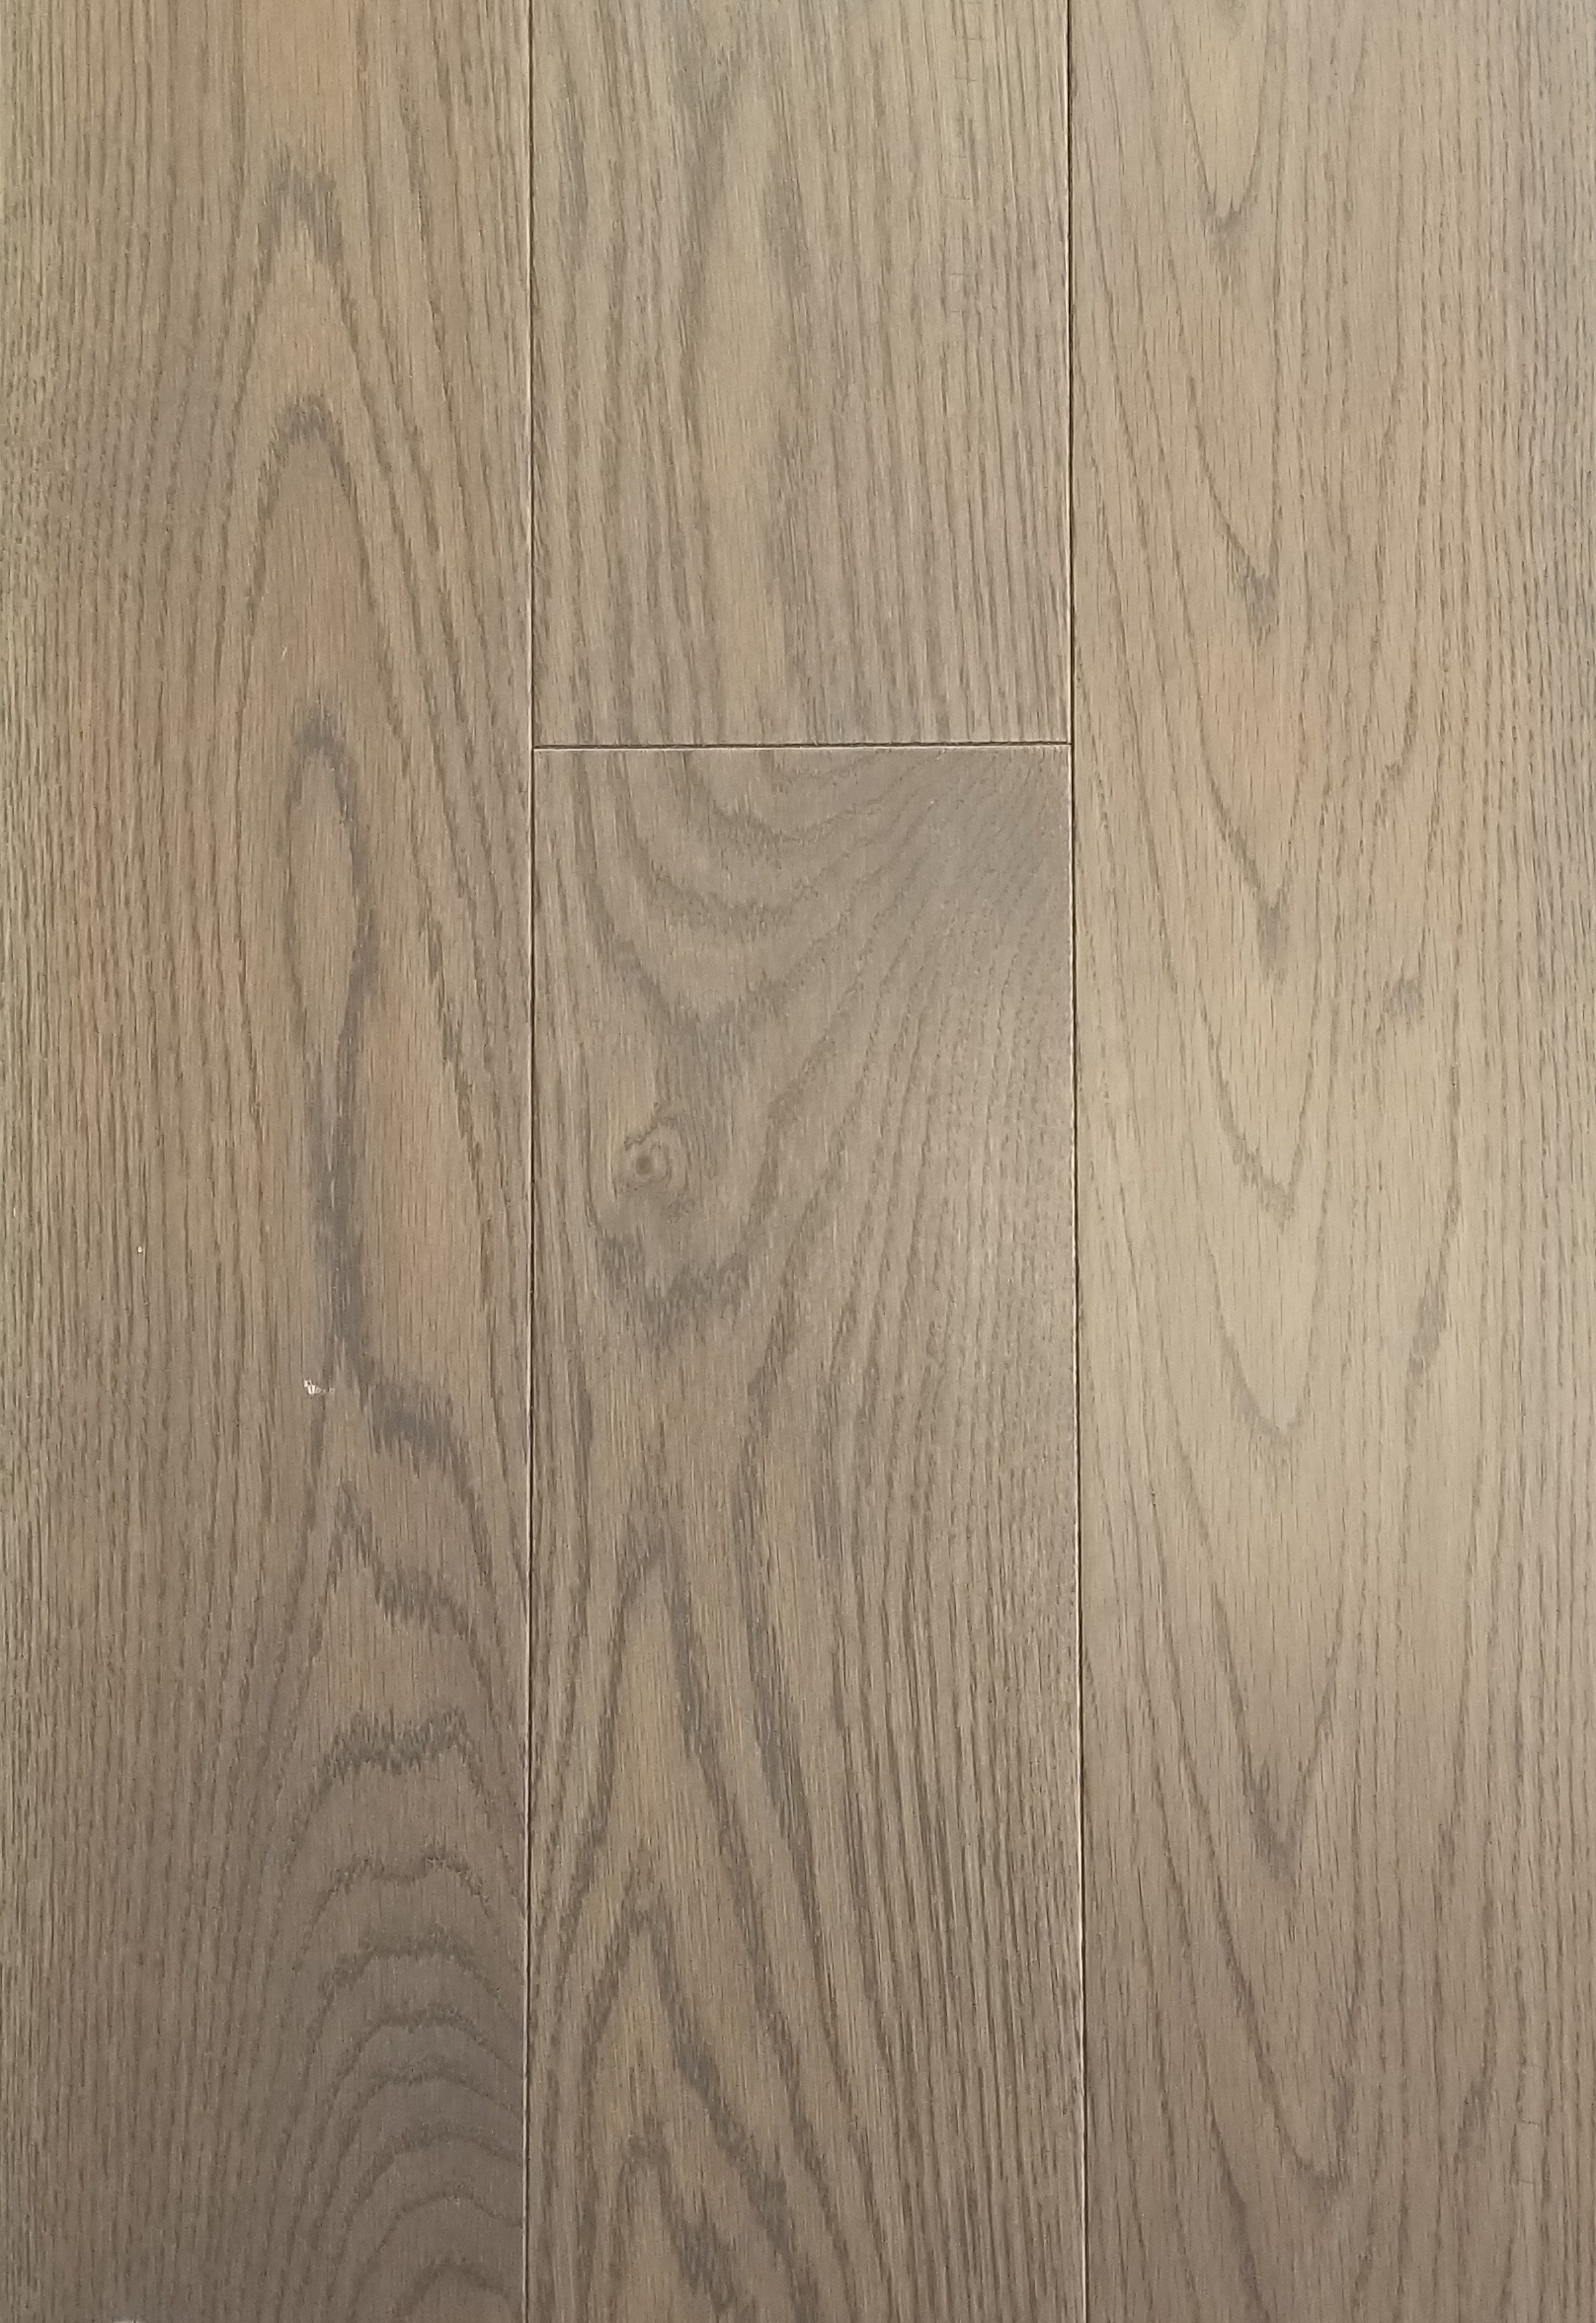 Hardwood Flooring Engineered, Driftwood Color Hardwood Floors